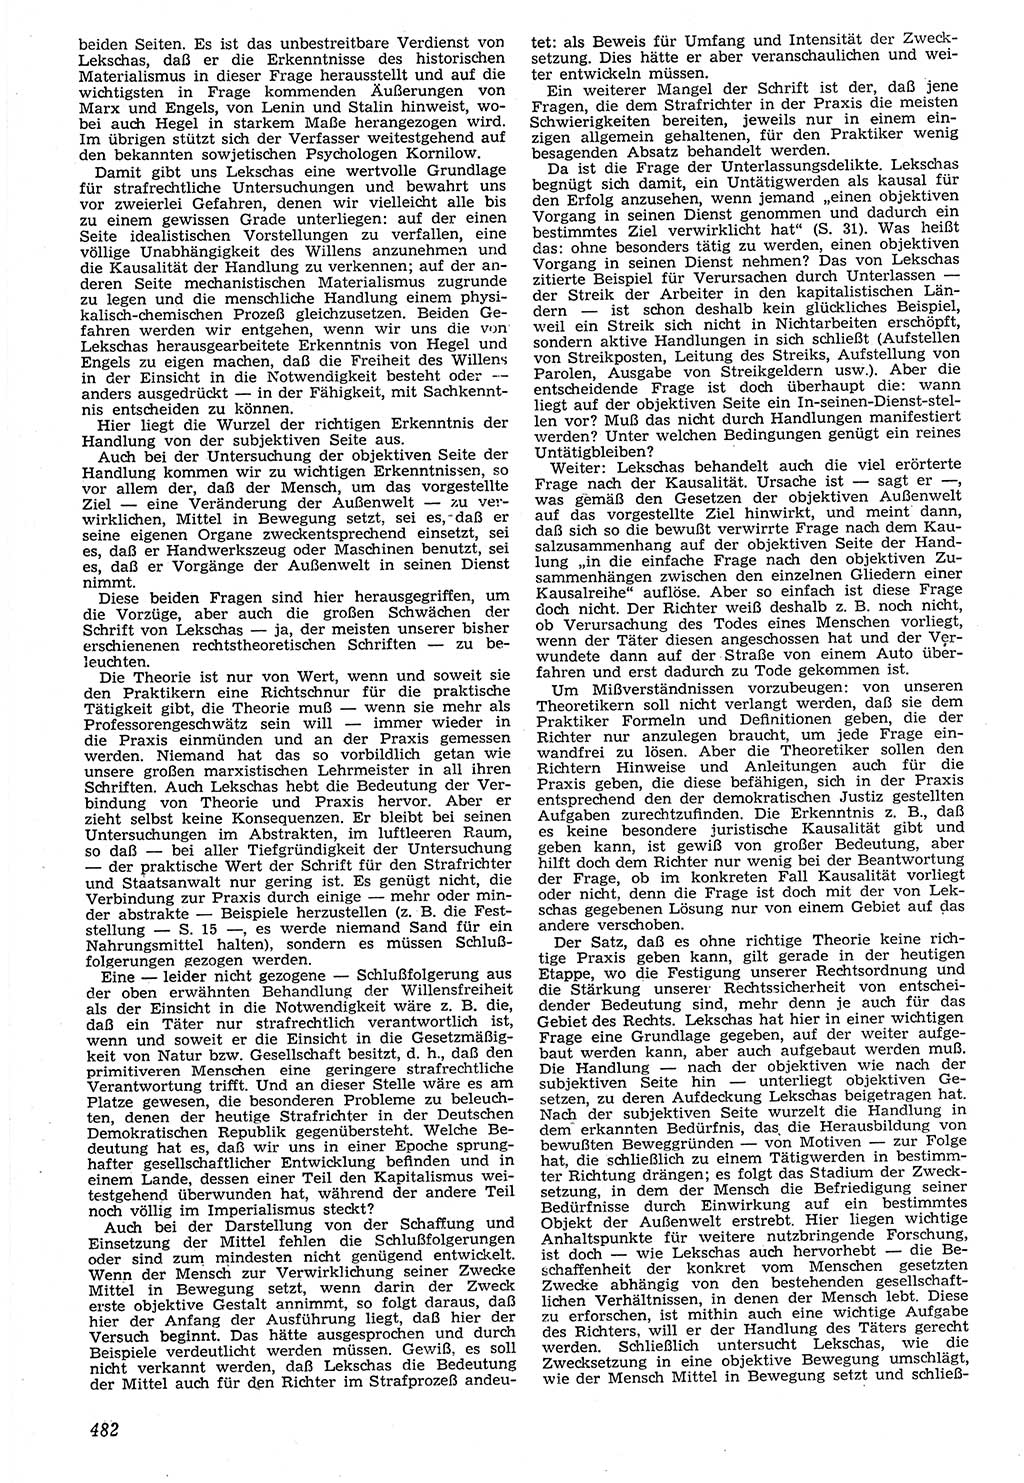 Neue Justiz (NJ), Zeitschrift für Recht und Rechtswissenschaft [Deutsche Demokratische Republik (DDR)], 7. Jahrgang 1953, Seite 482 (NJ DDR 1953, S. 482)